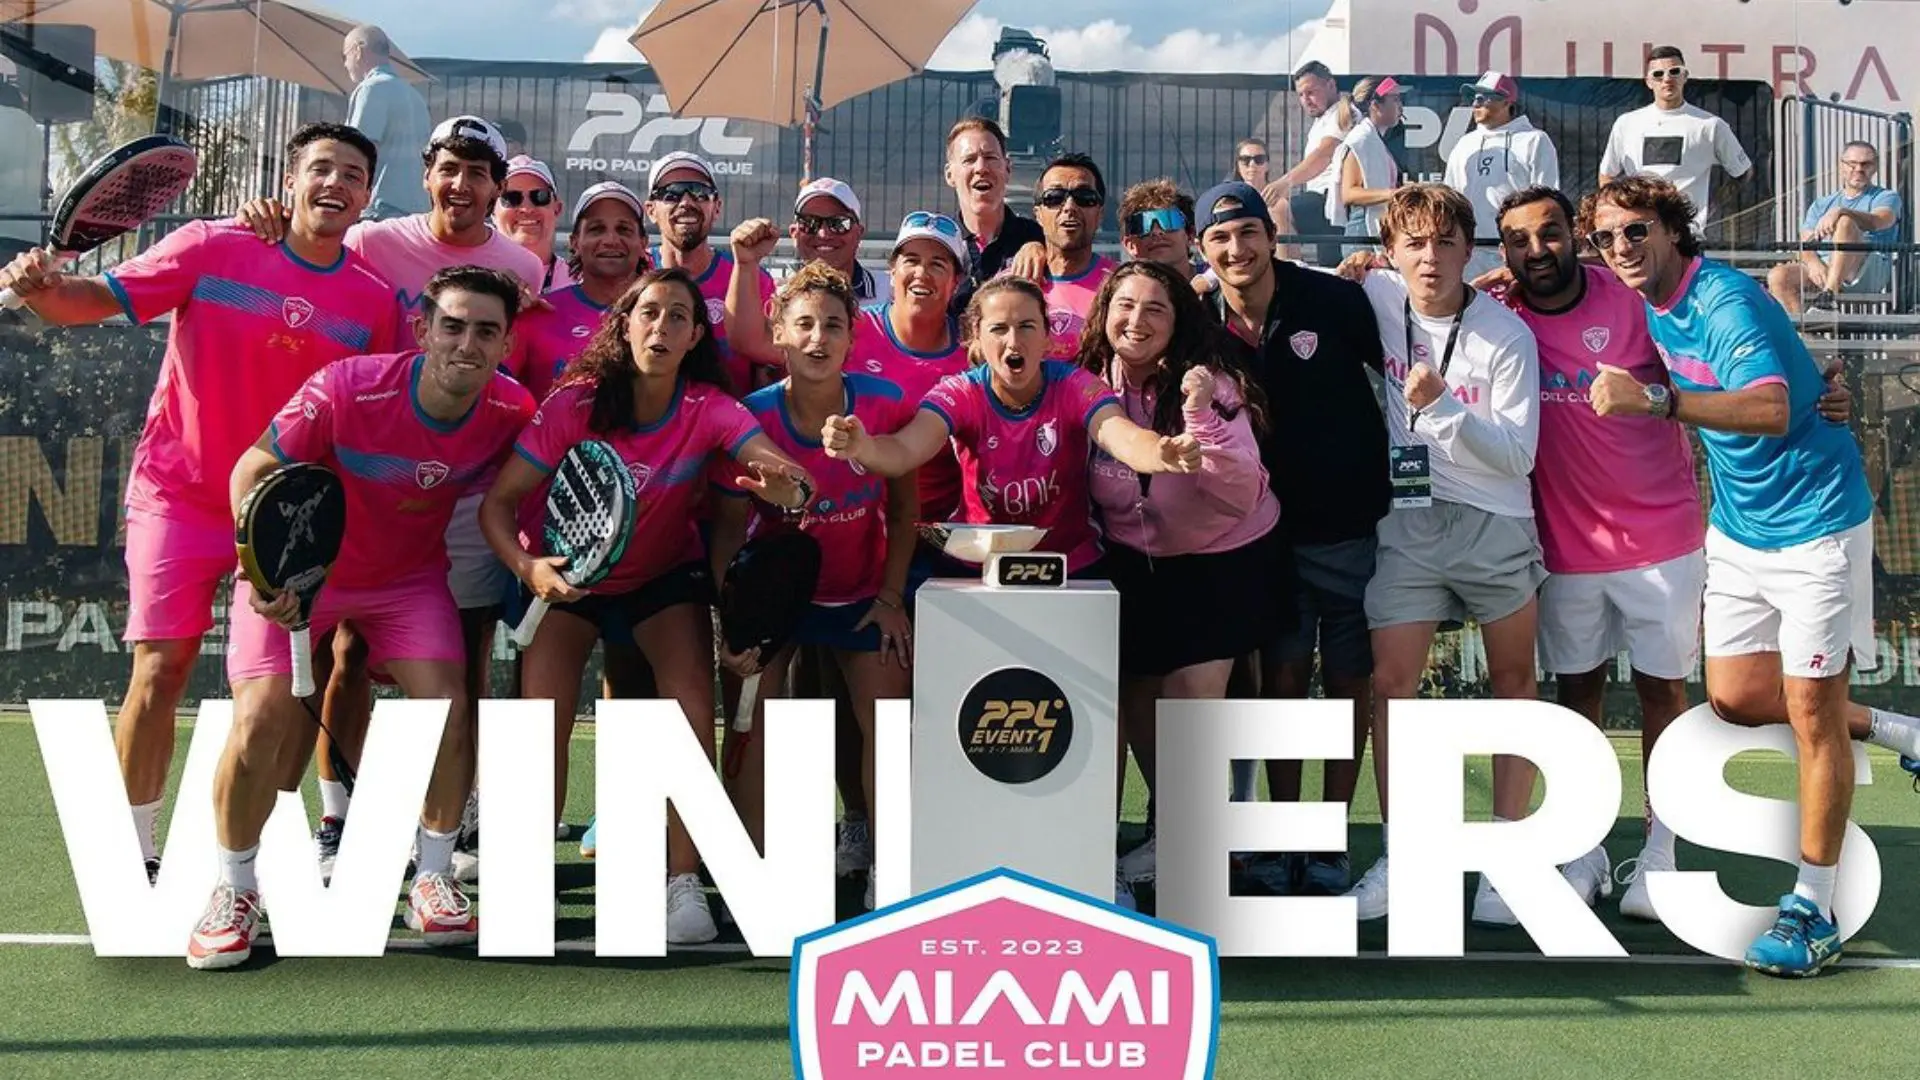 Pro Padel Liga – The Miami Padel Der Verein gewinnt die erste Etappe